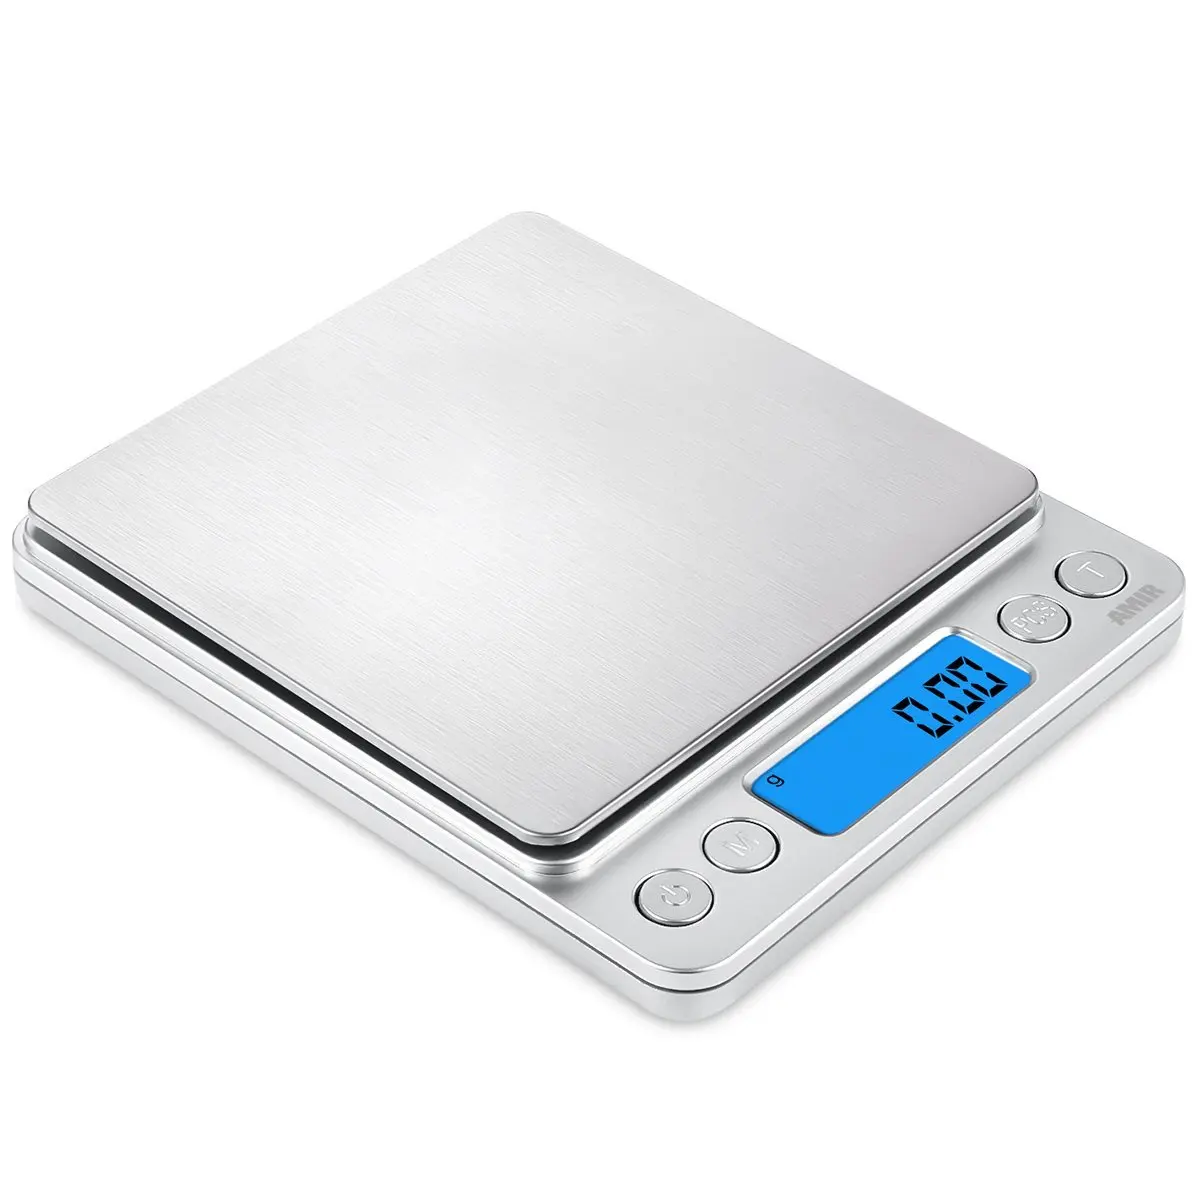 Цифровые весы, 500 г/0,01 г мини карманные измерительные весы, с подсветкой ЖК-дисплея